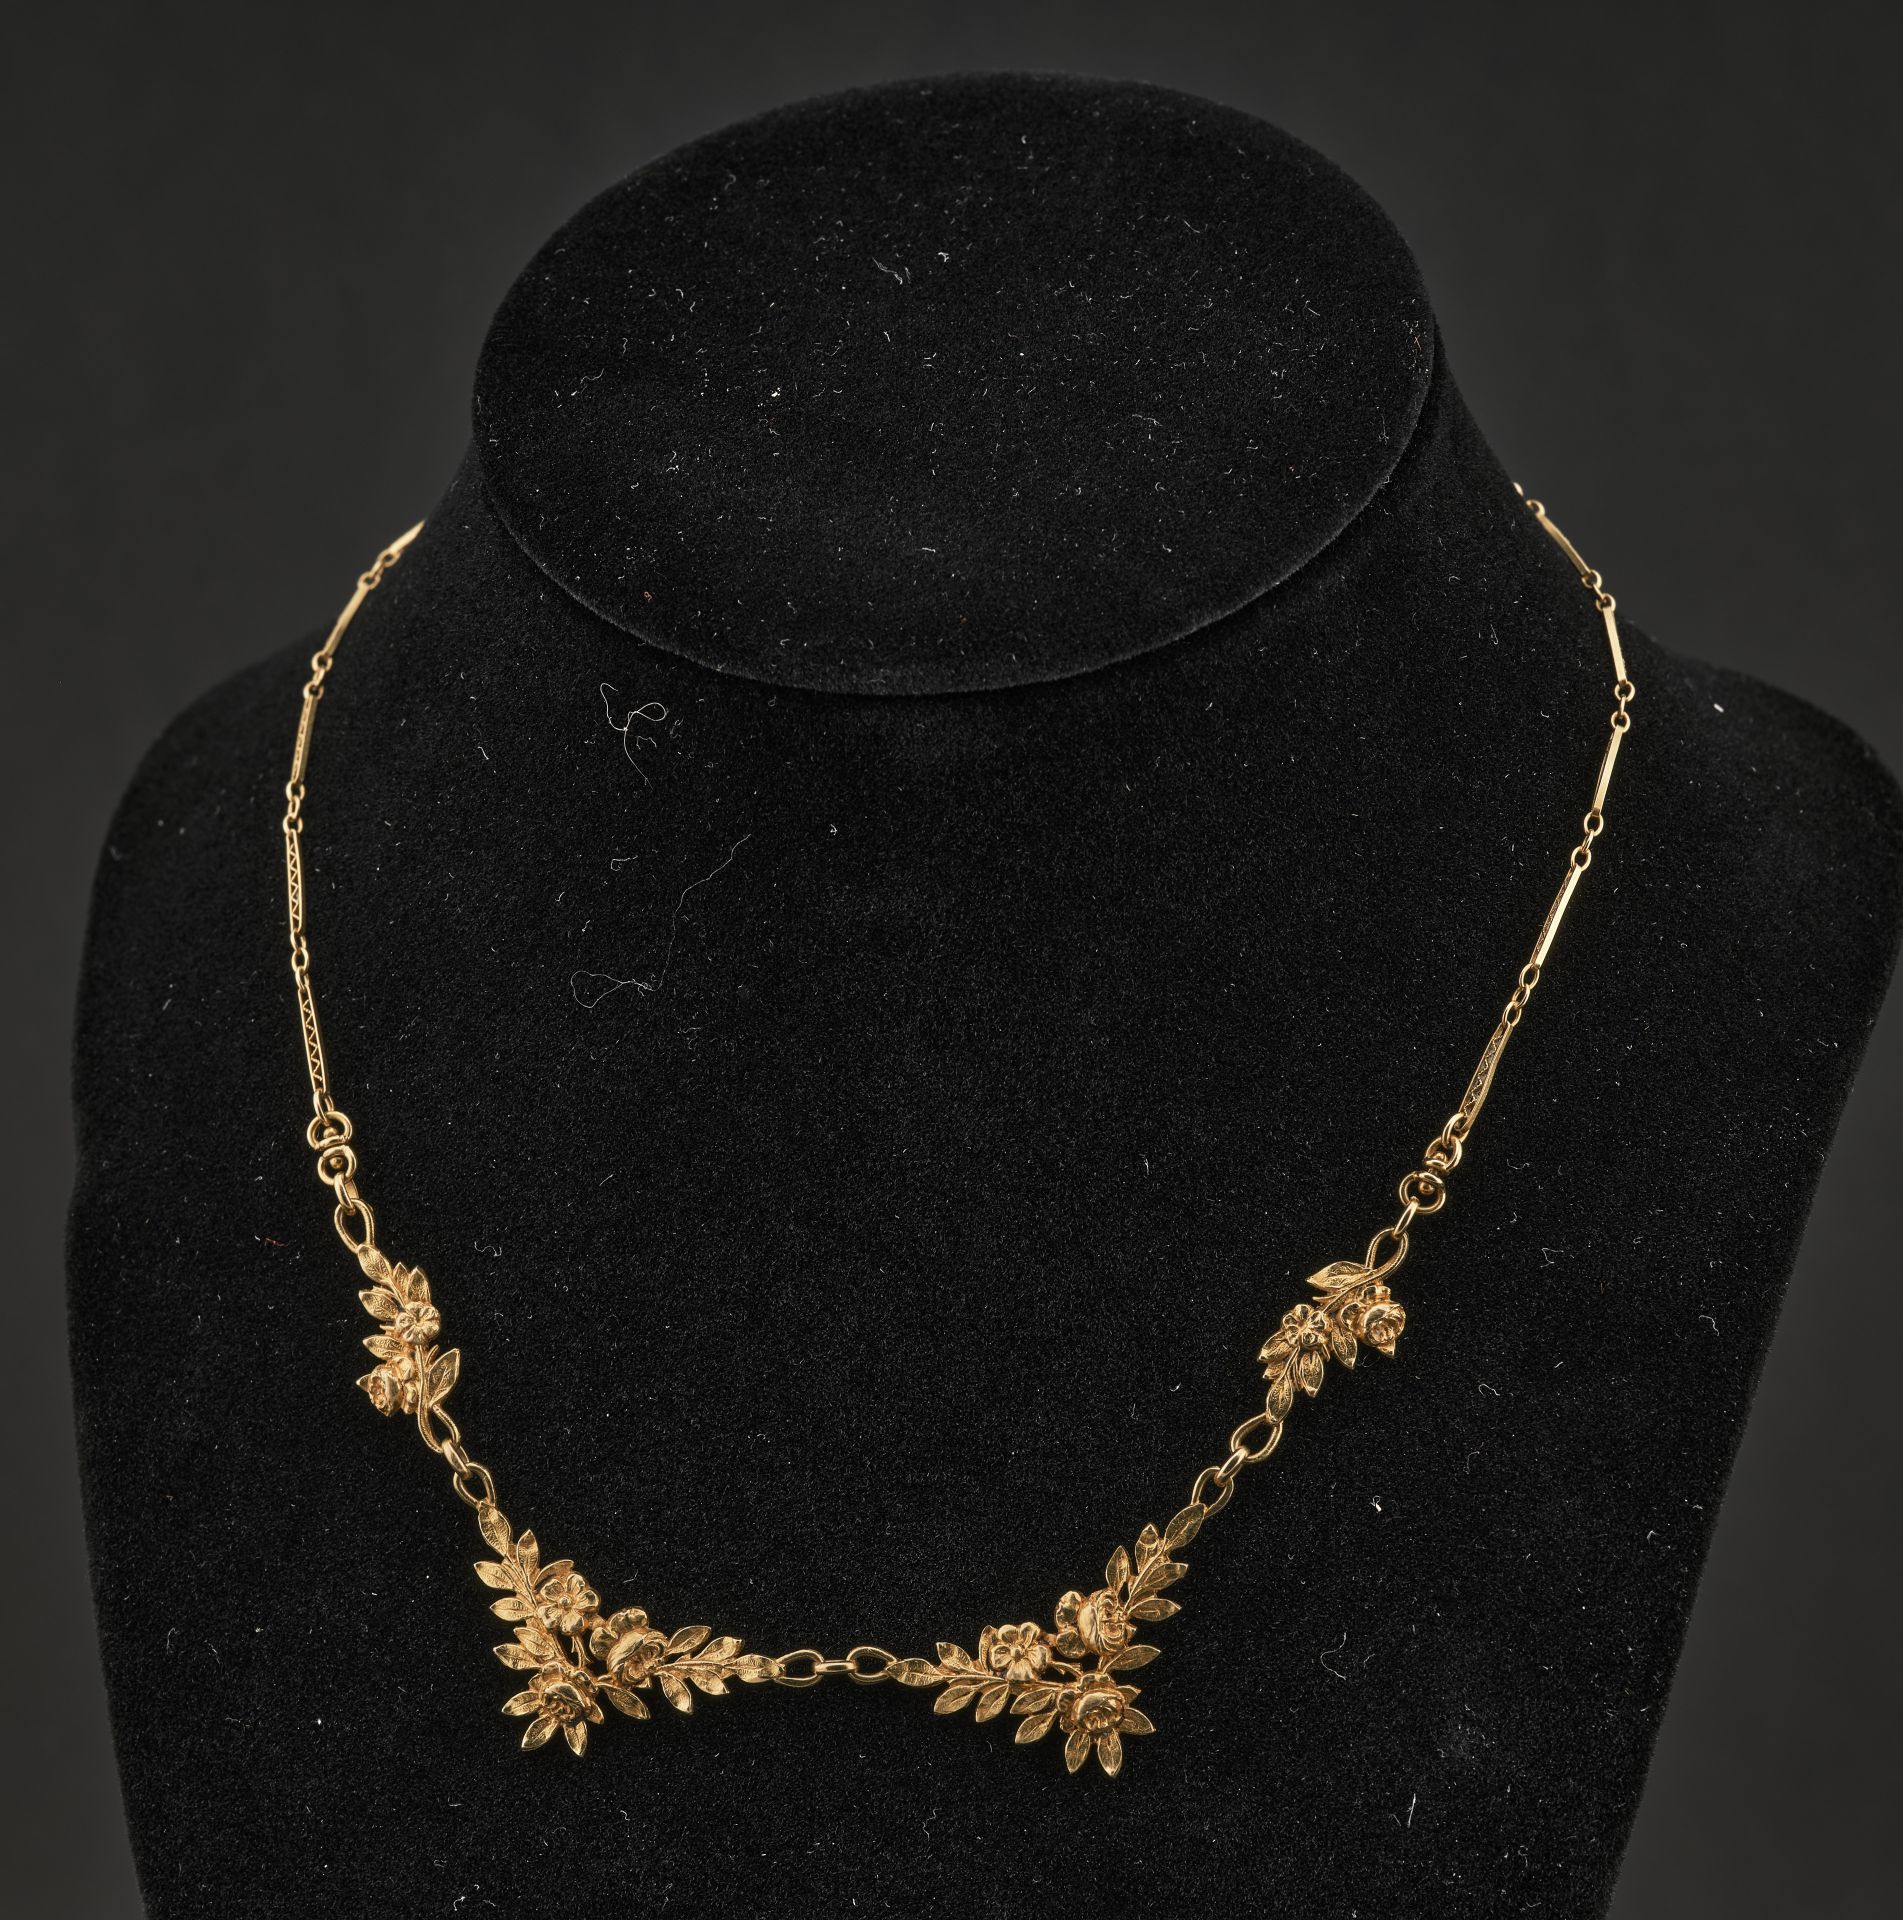 Null 新艺术风格的18K黄金75万分之一的项链项圈，装饰有四种花卉图案，长方形的网状花纹，扣子是钩子。长度: 36 cm - 毛重: 8,98g